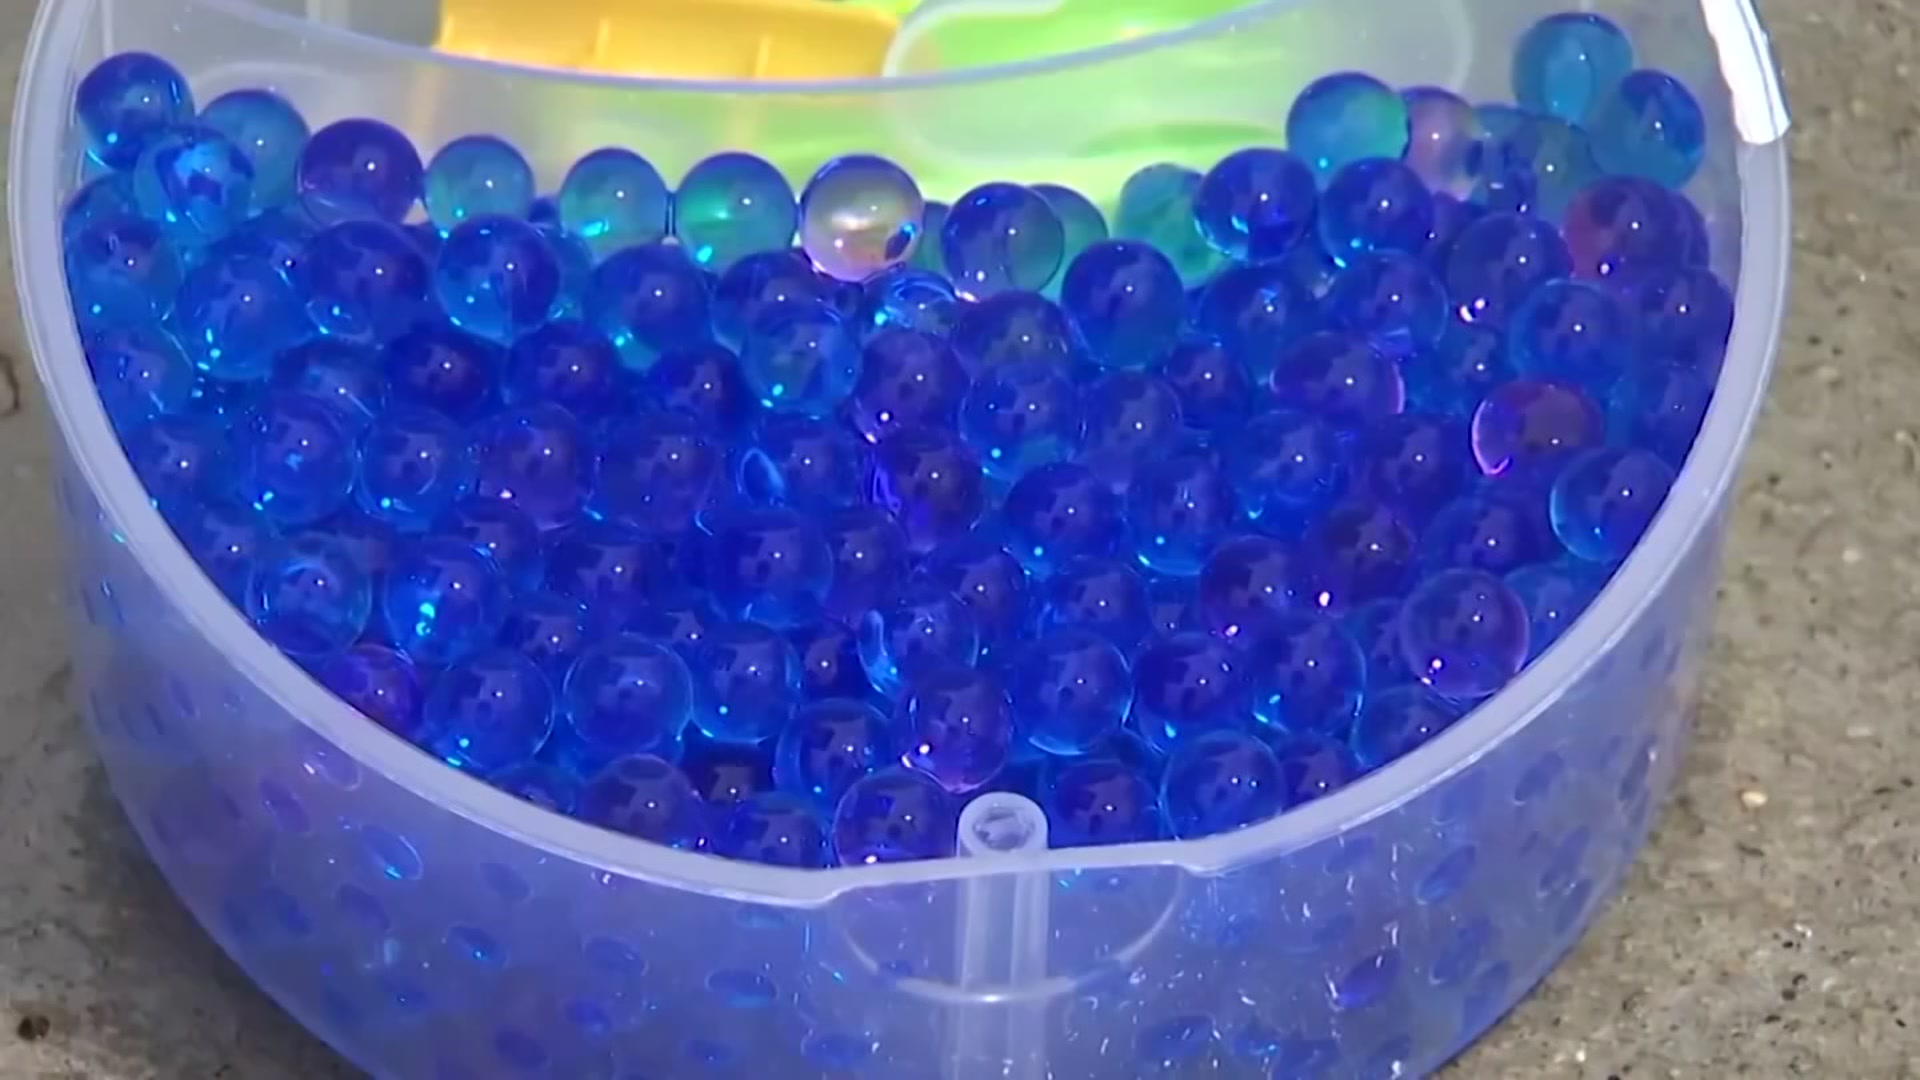 Water Beads: A Safety Hazard for Children